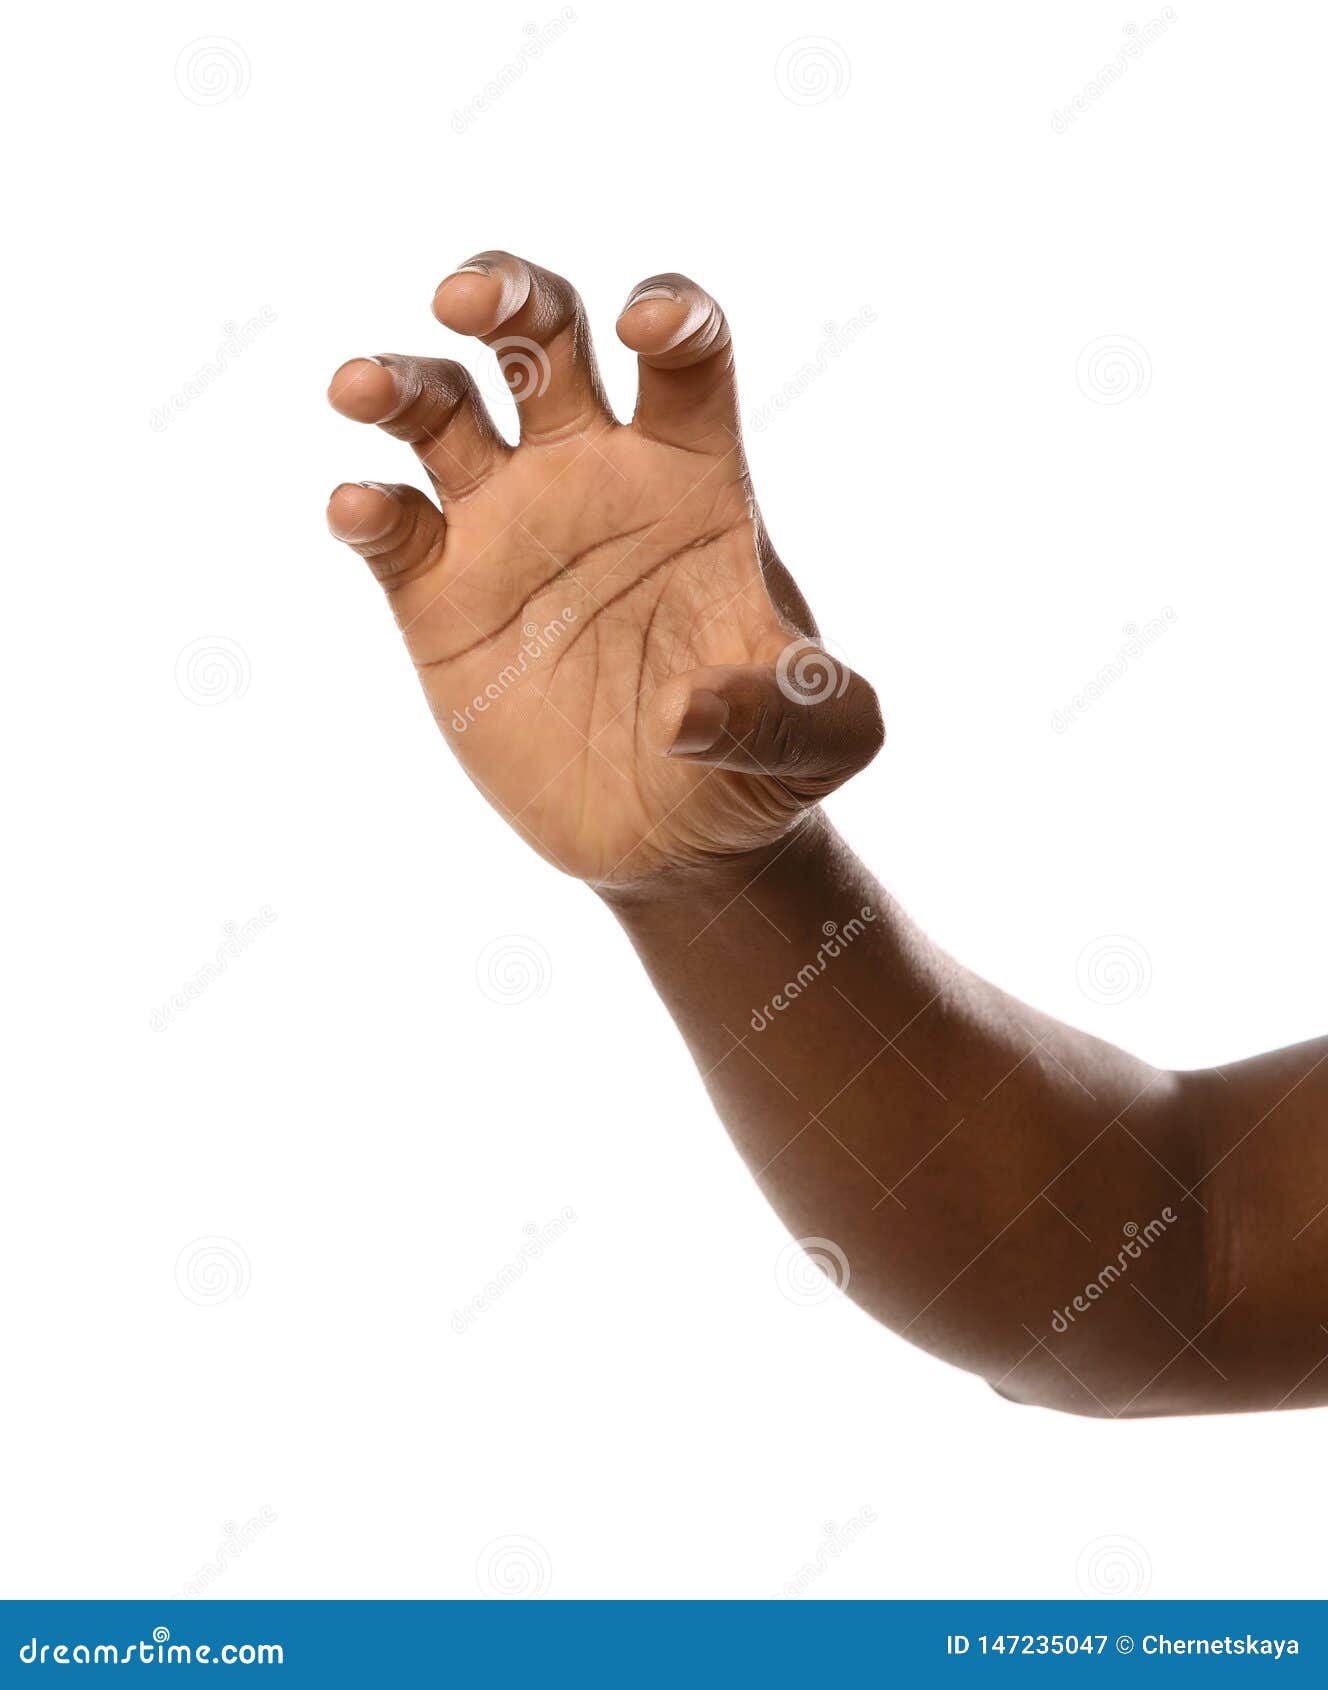 Дядя тянет руку в руке шоколадка. Рука негра. Ладонь афроамериканца. Ладони чернокожего человека. Негритянские руки.